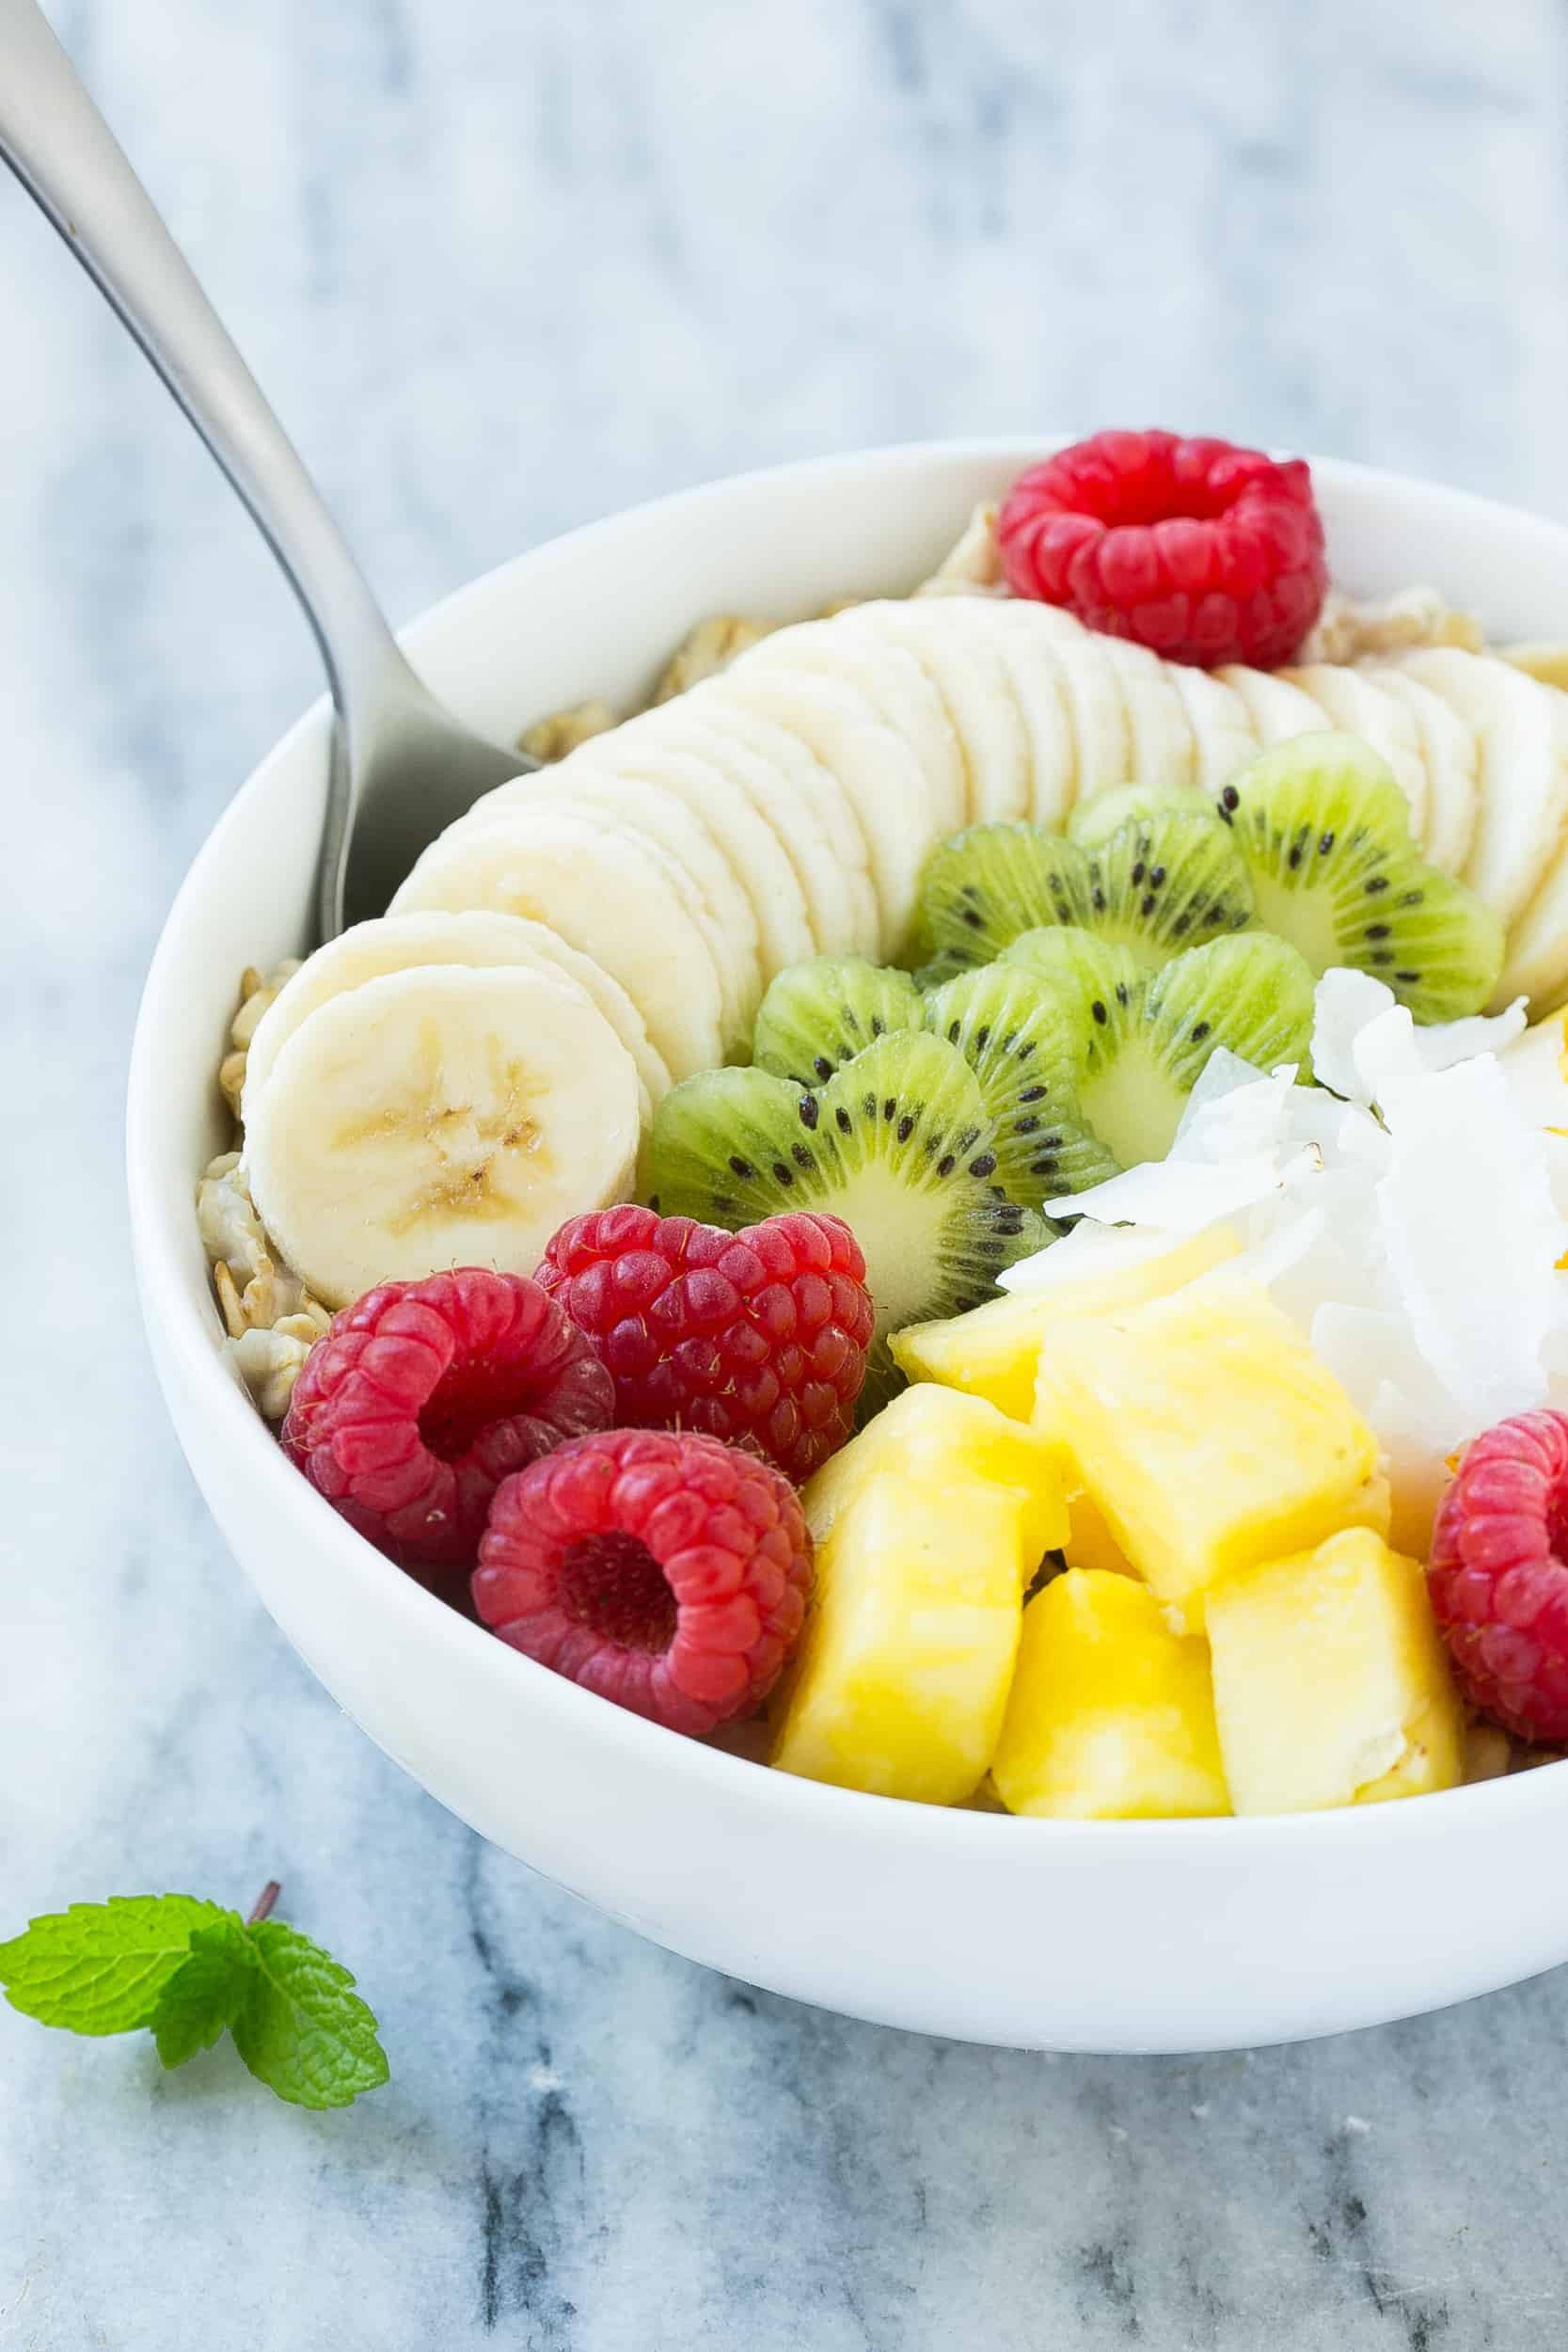 Easy Healthy Fruit Breakfast Ideas You’ll Love